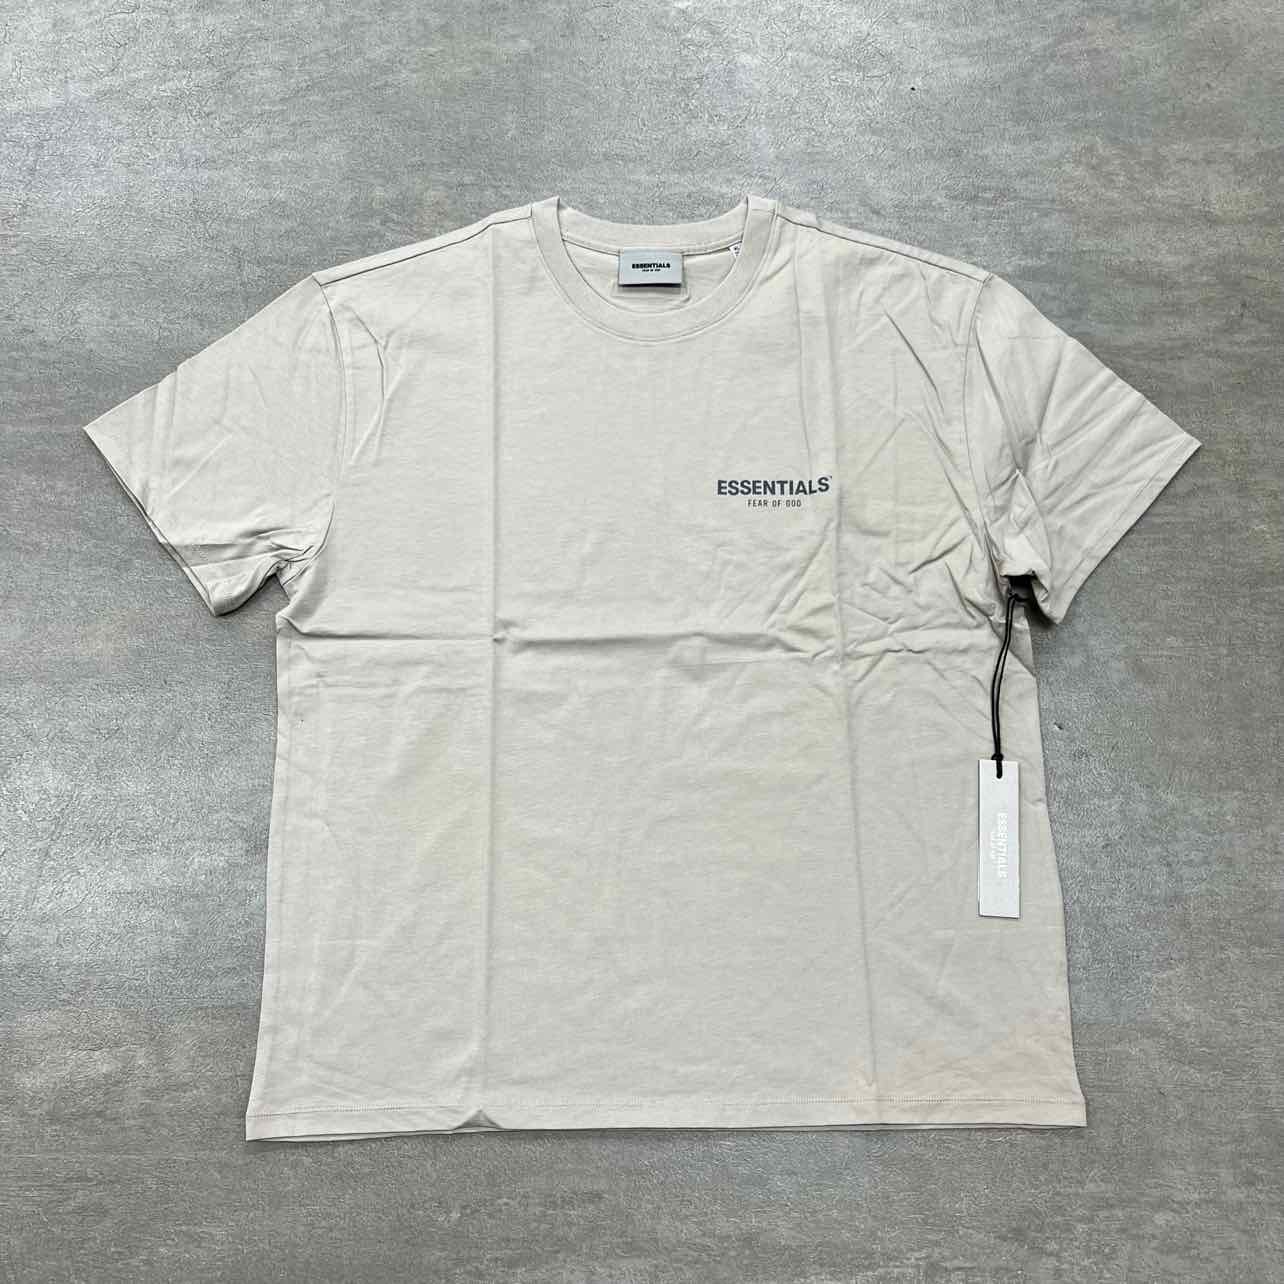 Fear of God T-Shirt &quot;ESSENTIALS&quot; Tan New Size 2XL